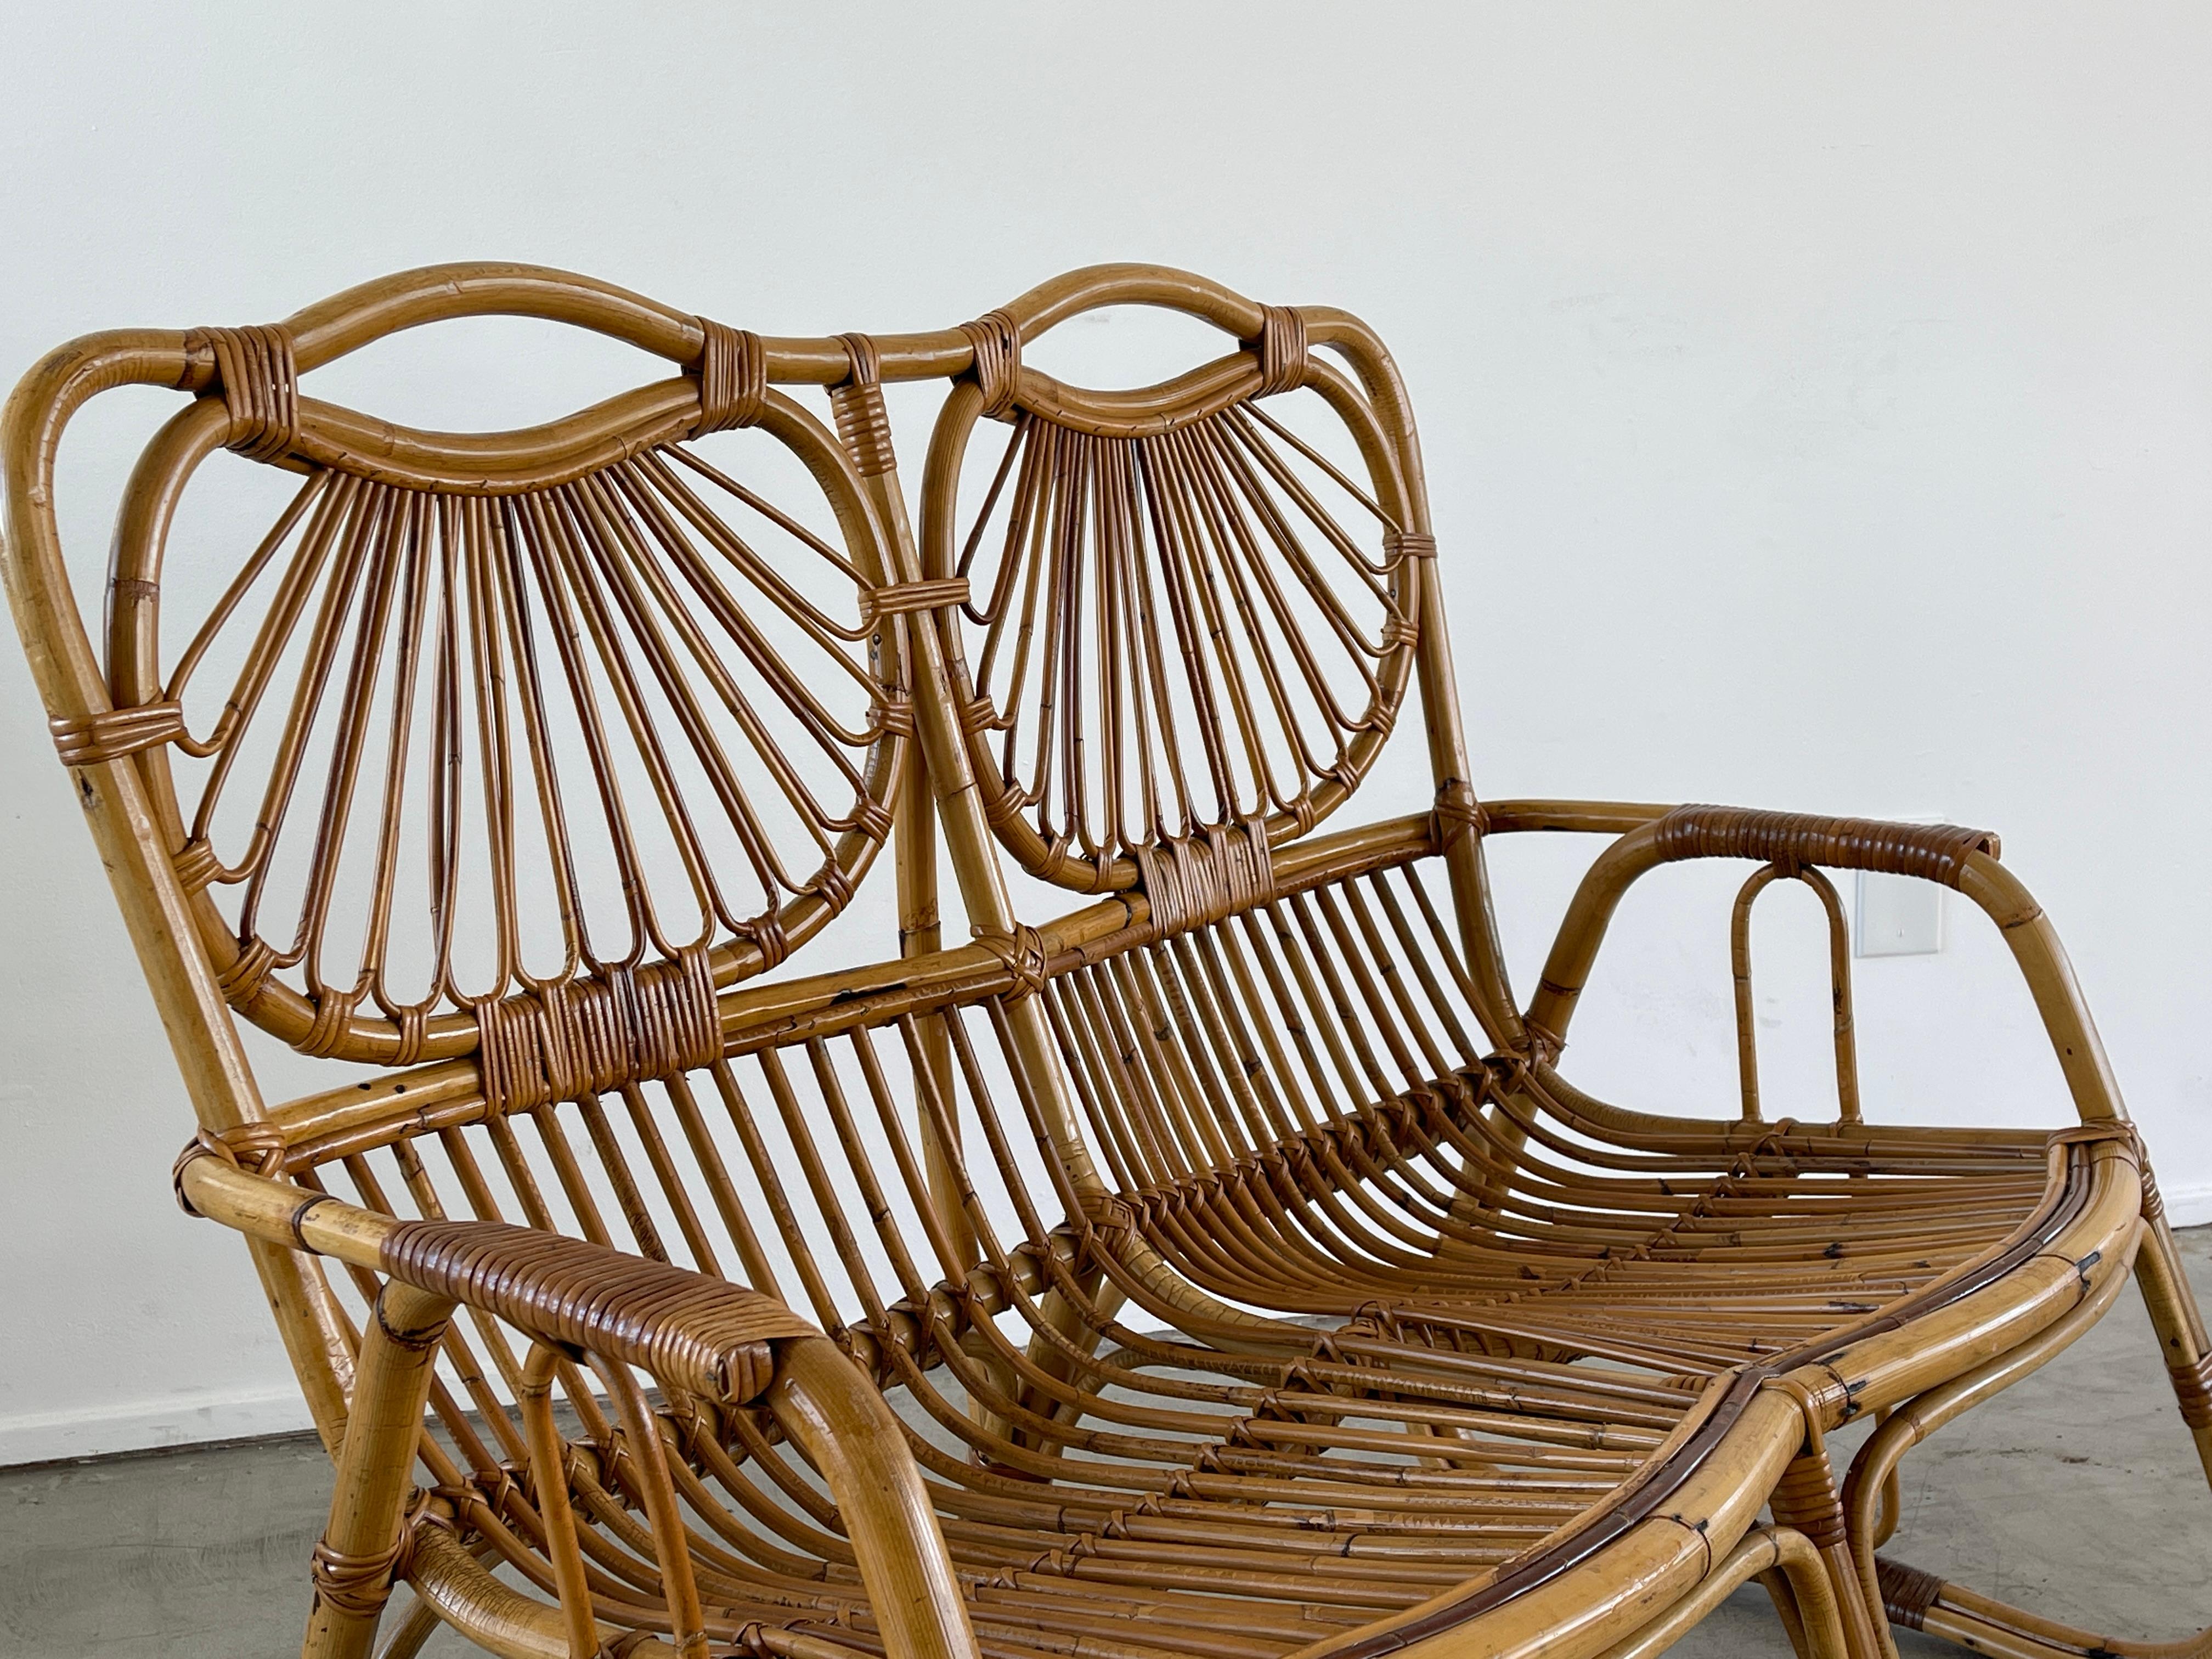 canapé italien des années 1950 en bambou avec une forme sculpturale unique. 
Chaises assorties disponibles - vendues séparément.